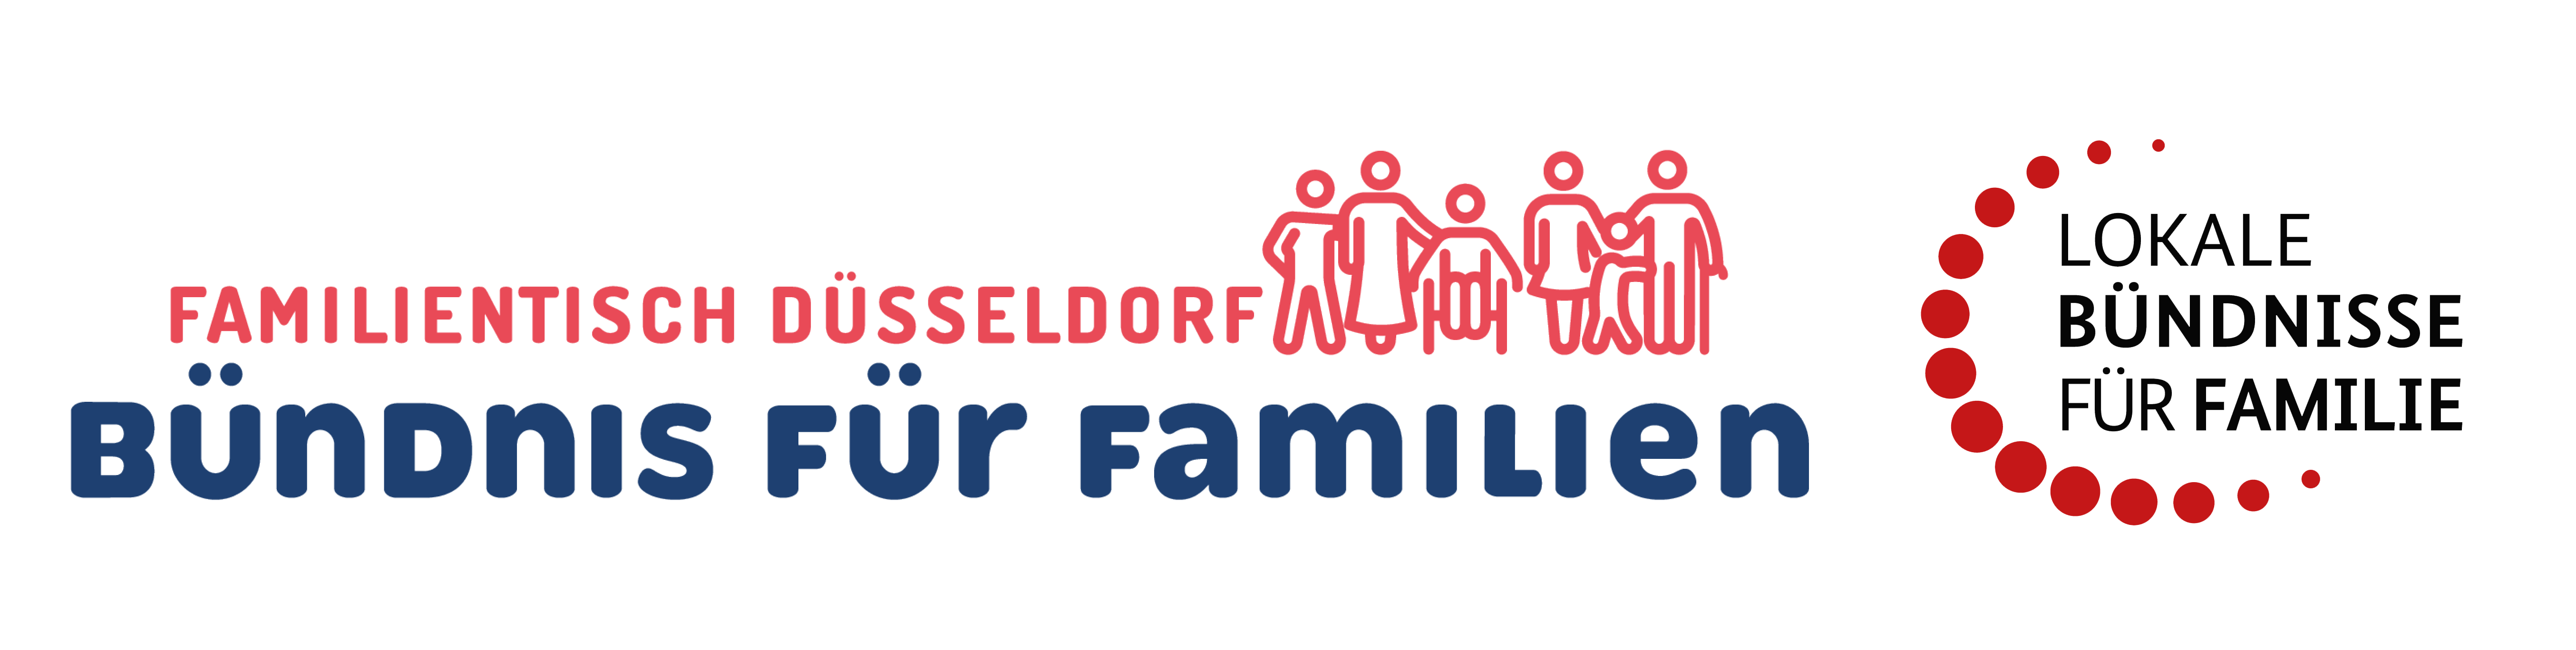 Düsseldorfer Bündnis für Familien - Familientisch Düsseldorf